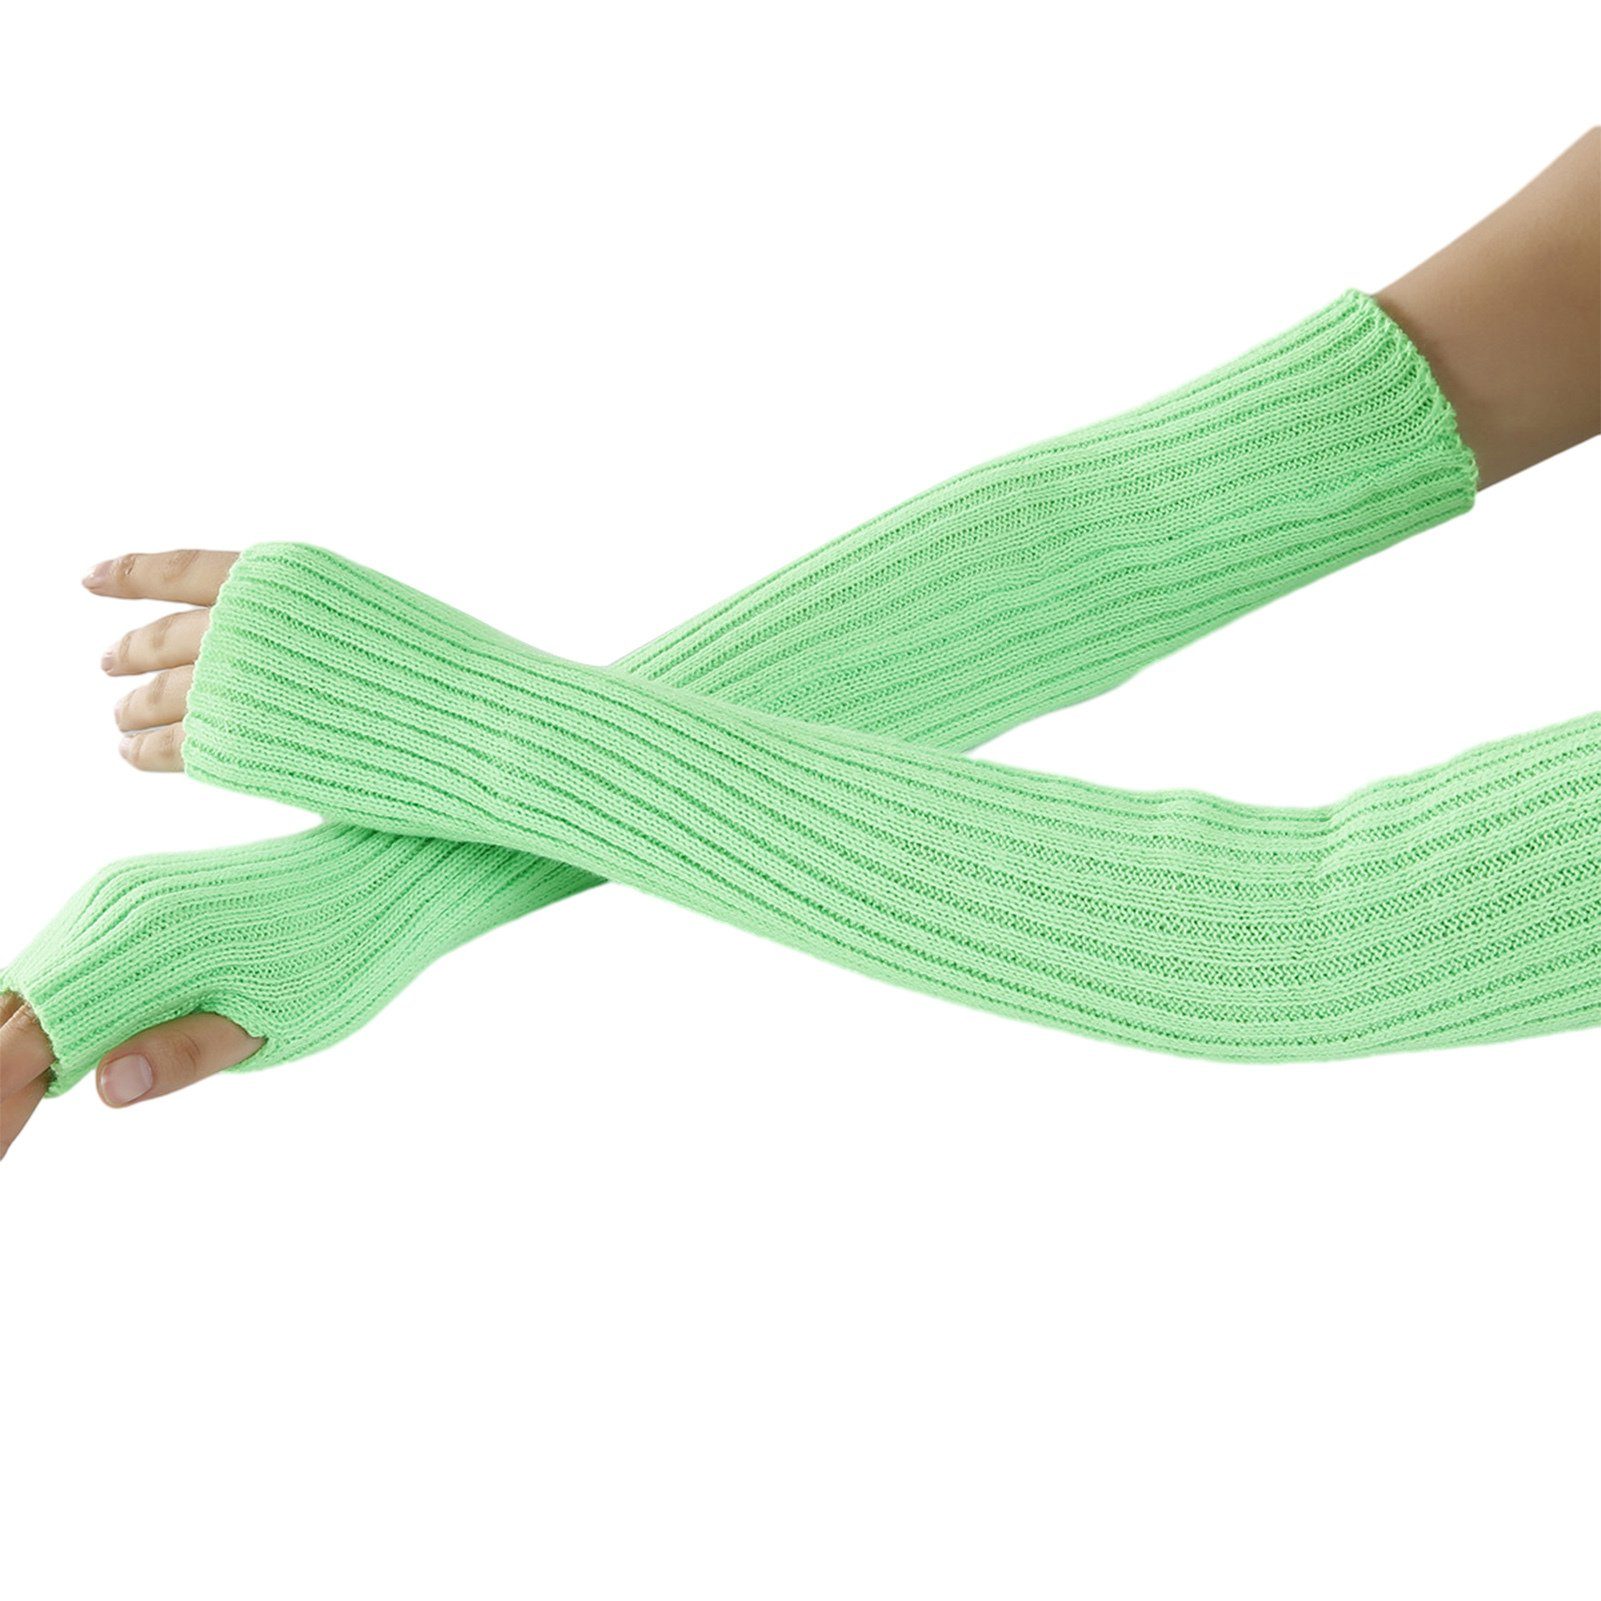 Winterhandschuhe Fingerlose Blusmart Handschuhe, Strickhandschuhe Grün Bequeme Strickhandschuhe Warmhalten, Zum Lange